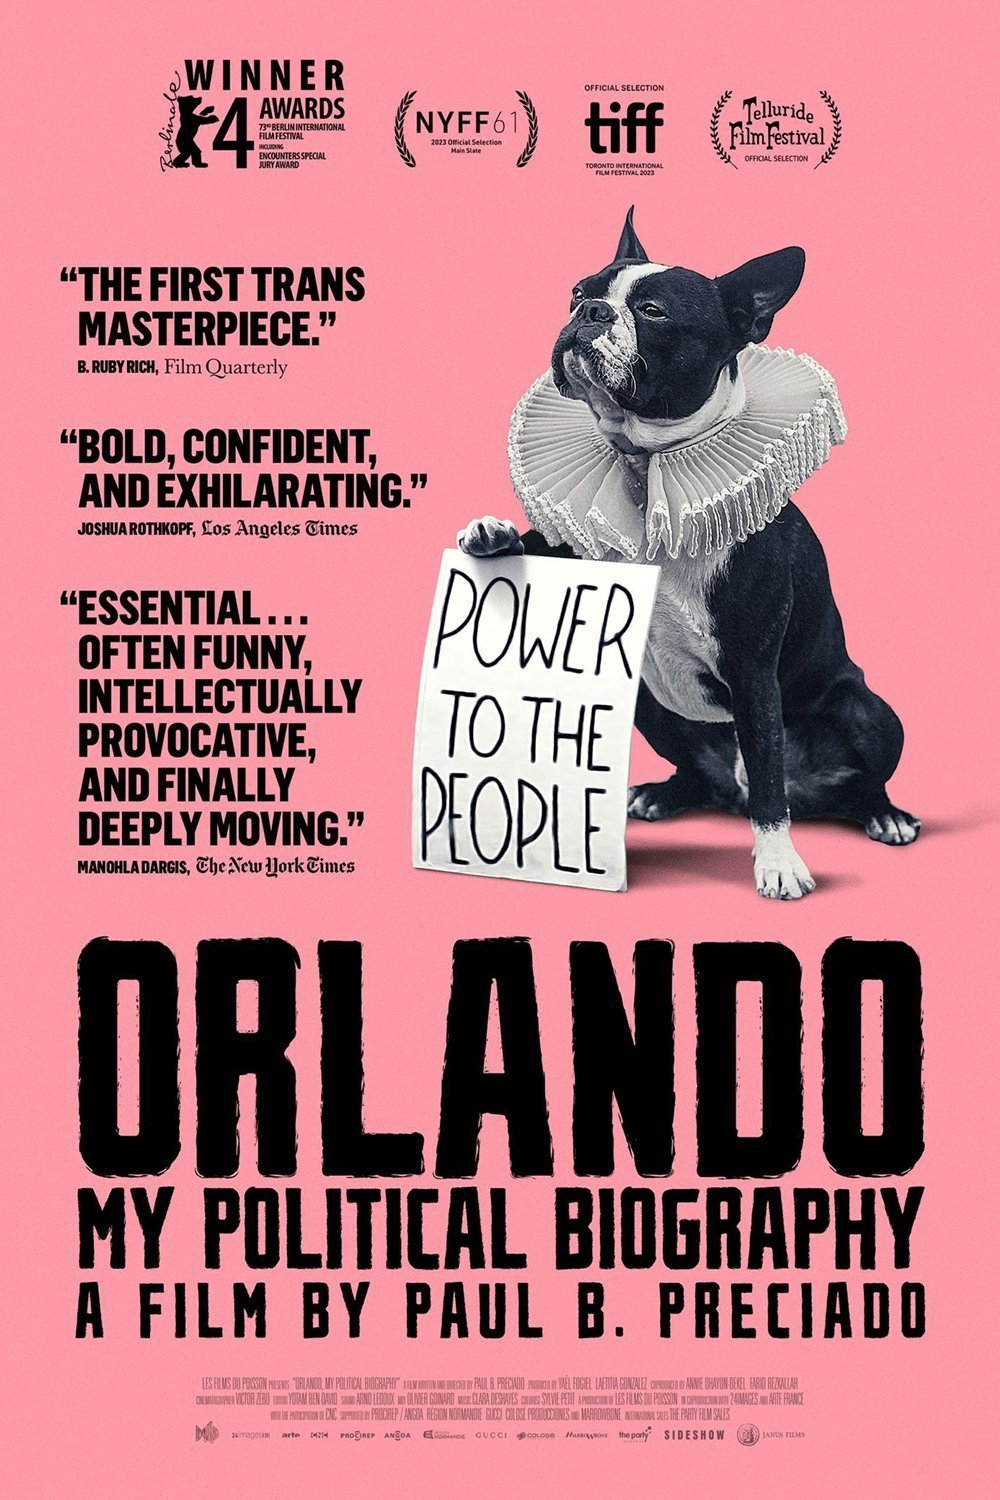 Poster of the movie Orlando, ma biographie politique